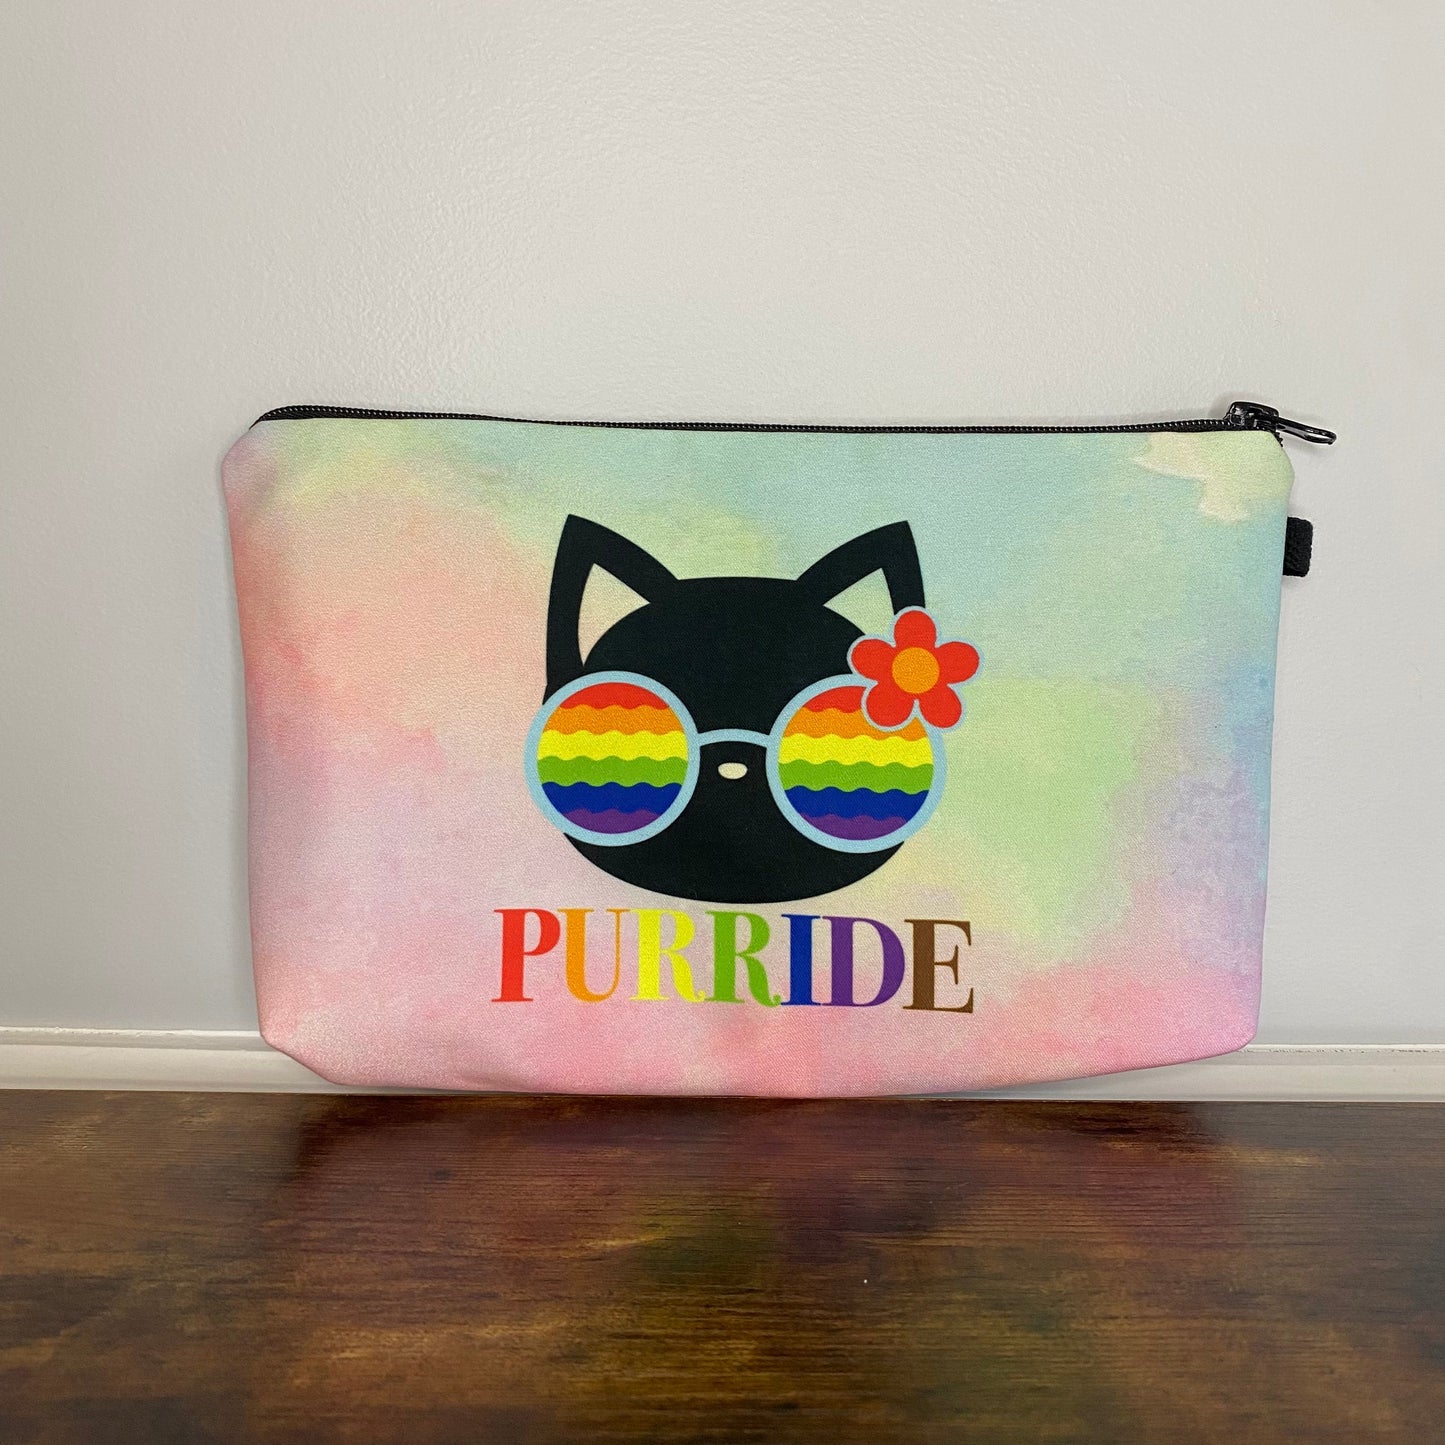 Pouch - Pride, Purride